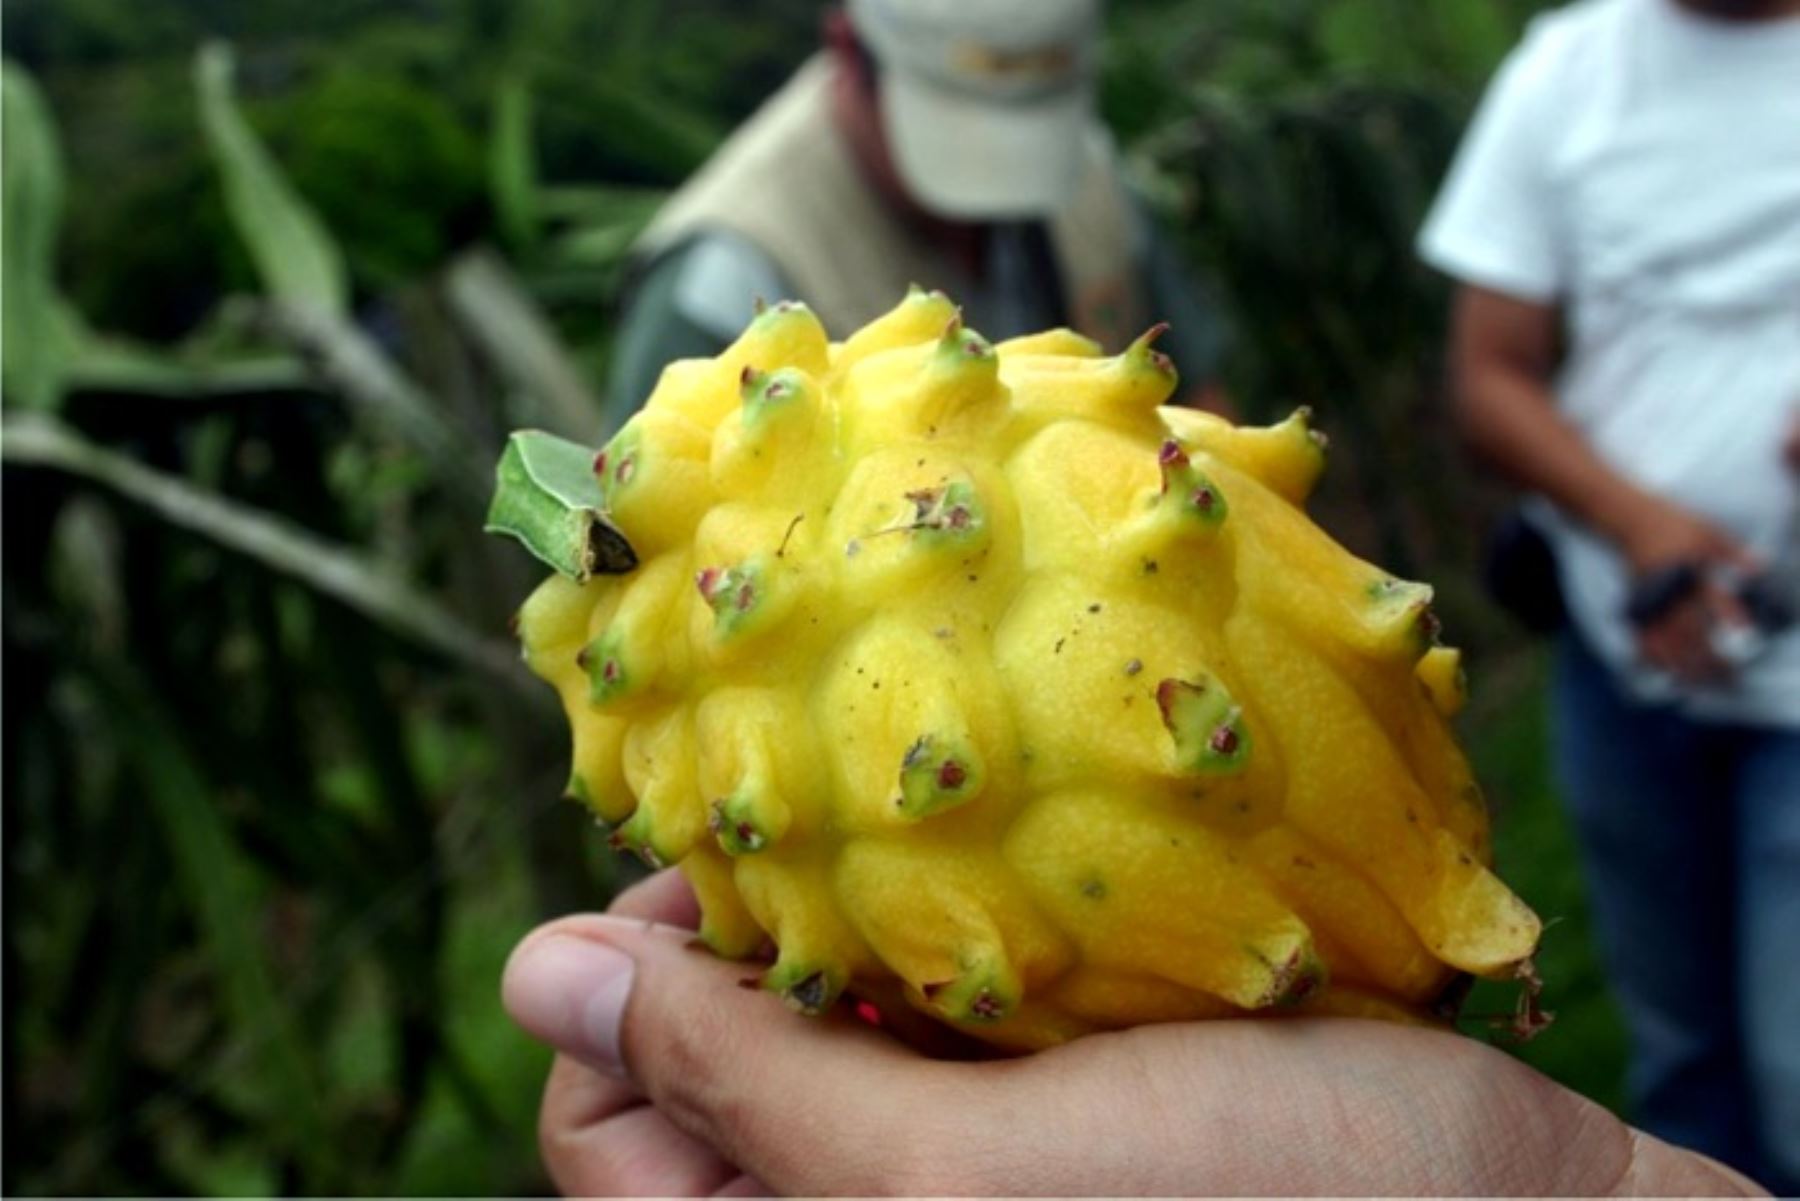 La pitahaya es uno de los frutos amazónicos de gran valor nutricional que ayudan a fortalecer el sistema inmune frente al coronavirus y otras enfermedades.